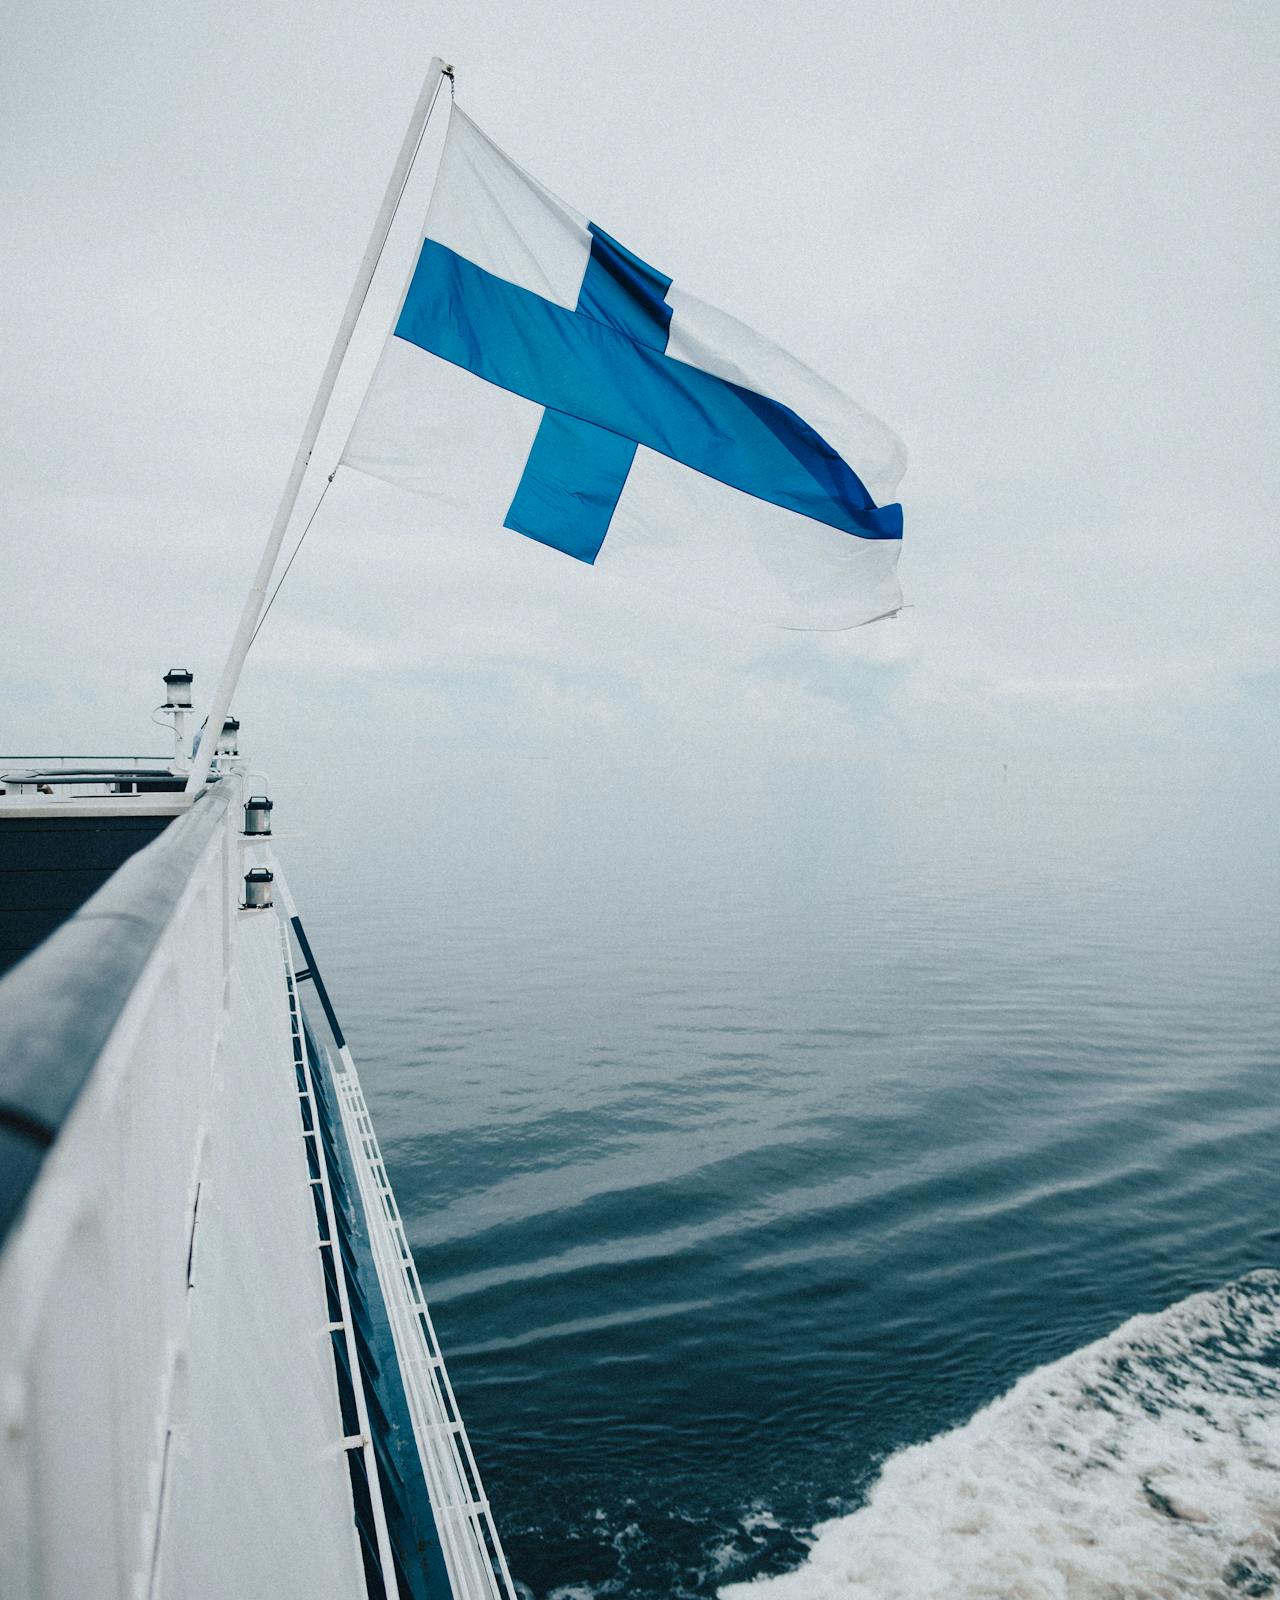 Για 7η συνεχόμενη χρονιά οι Φινλανδοί είναι οι πιο ευτυχισμένοι άνθρωποι στον κόσμο